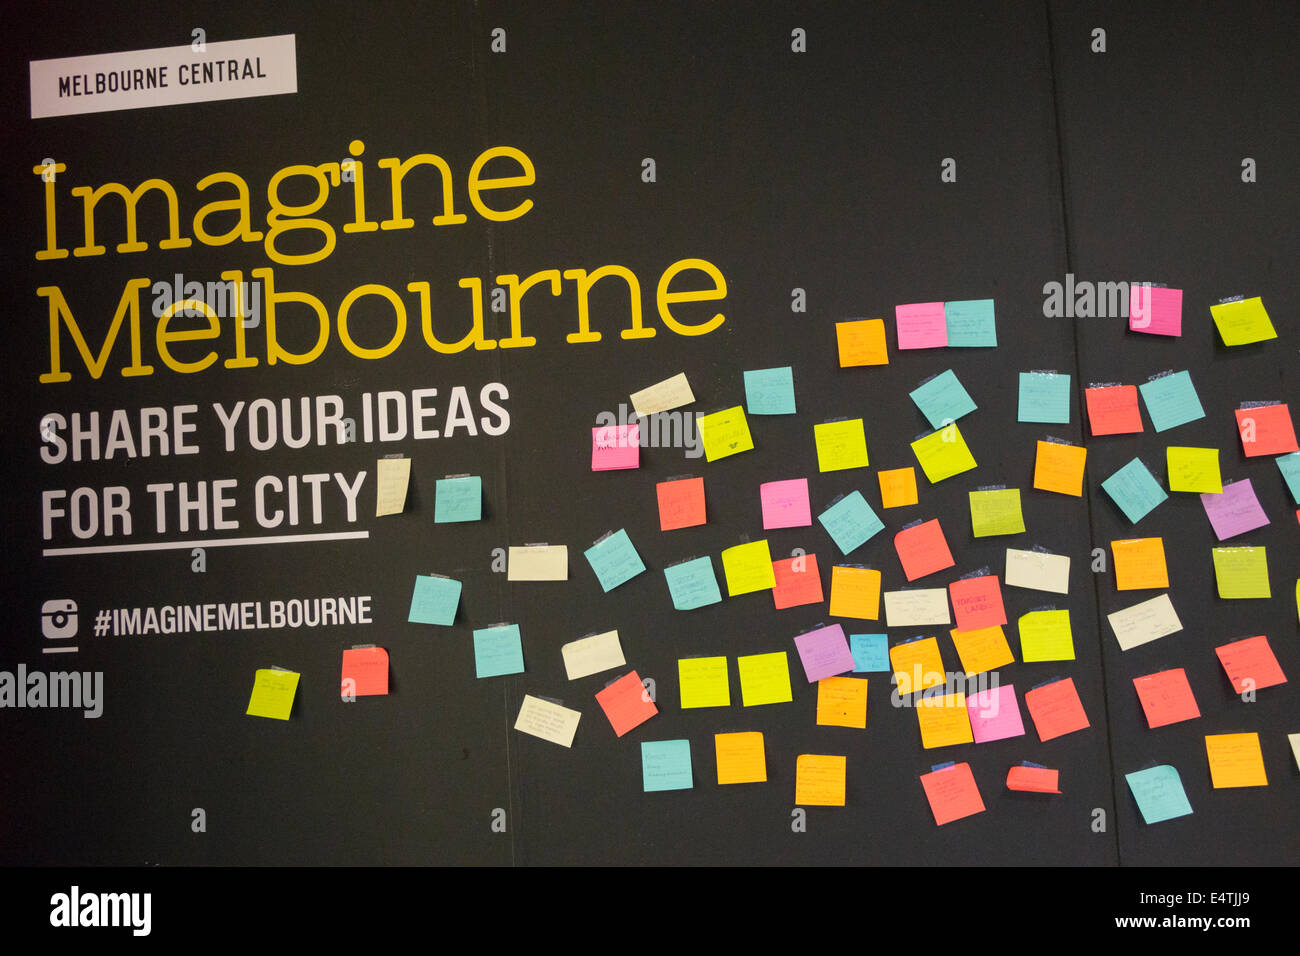 Melbourne Australien,Zentral,Stellen Sie sich Melbourne vor,teilen Sie Ihre Ideen,Cloud,geschrieben,Anmerkungen,AU140319120 Stockfoto